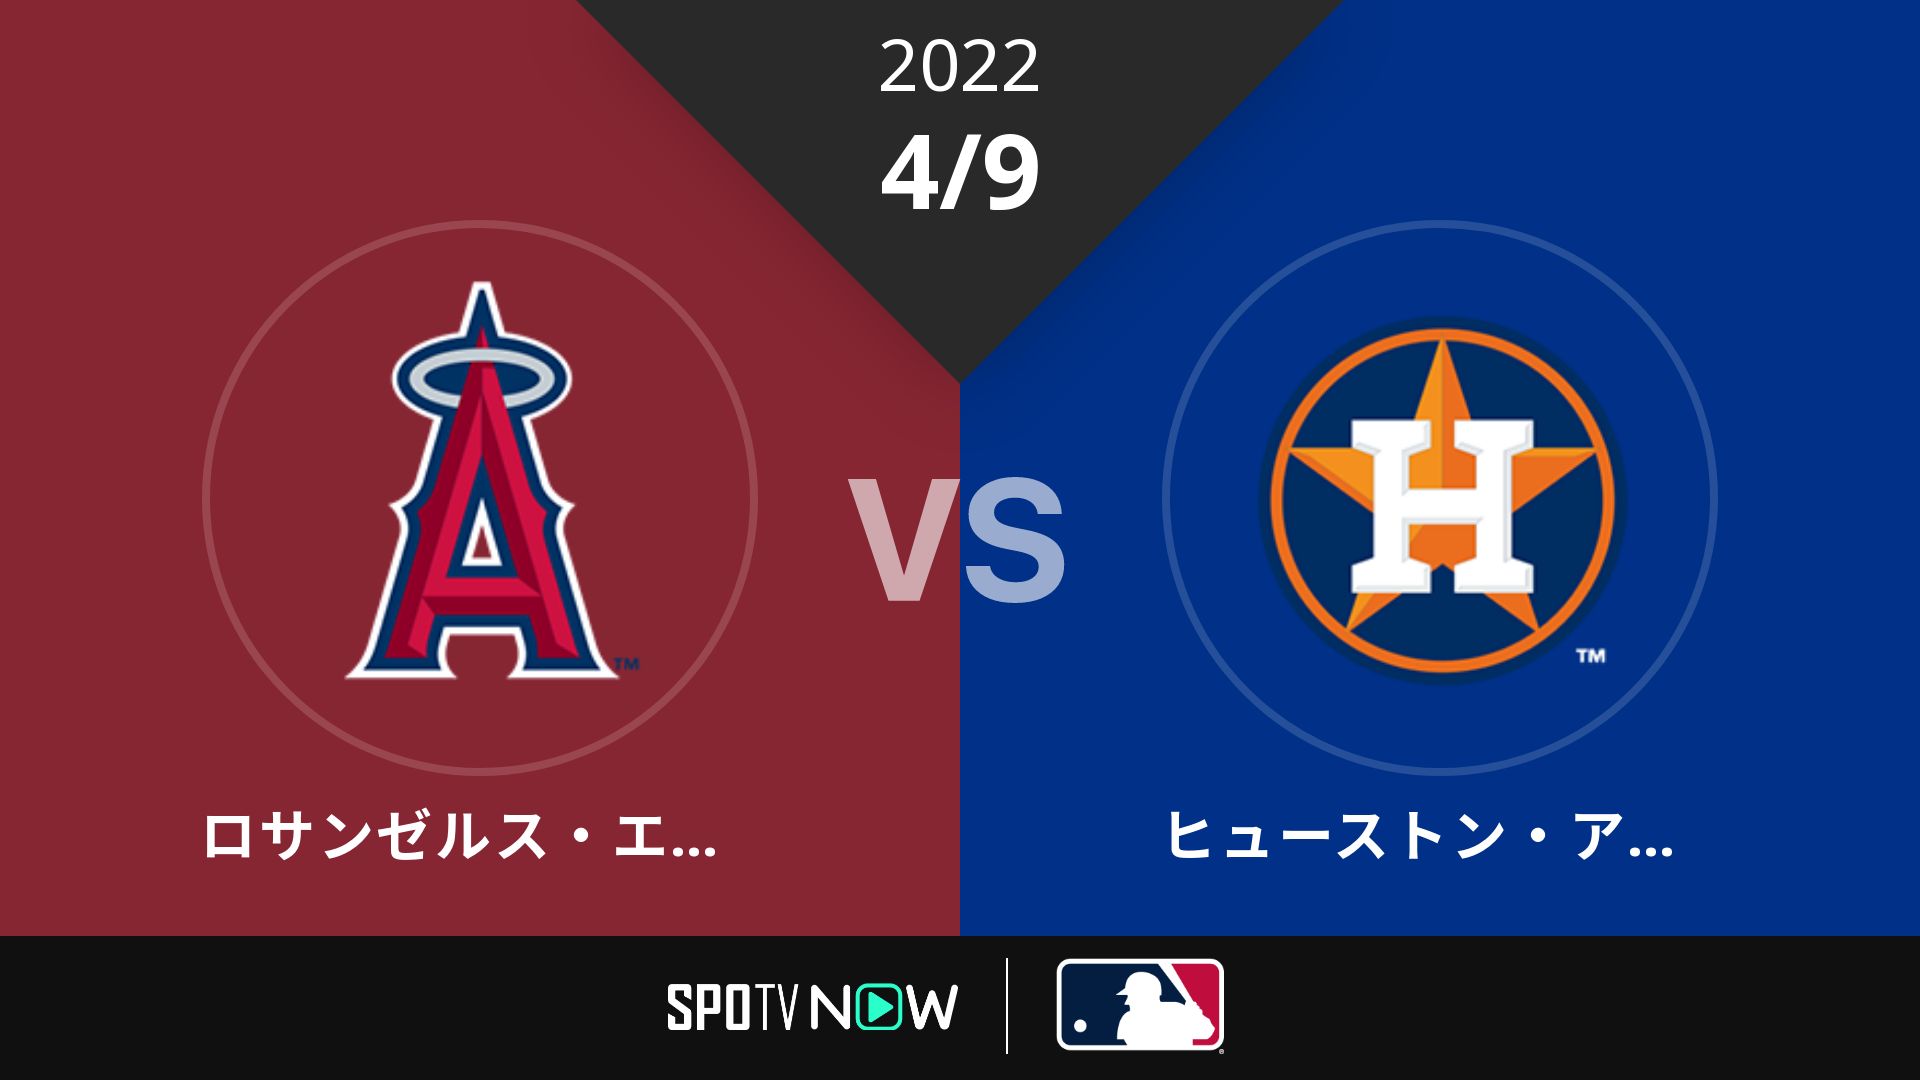 2022/4/9 エンゼルス vs アストロズ [MLB]